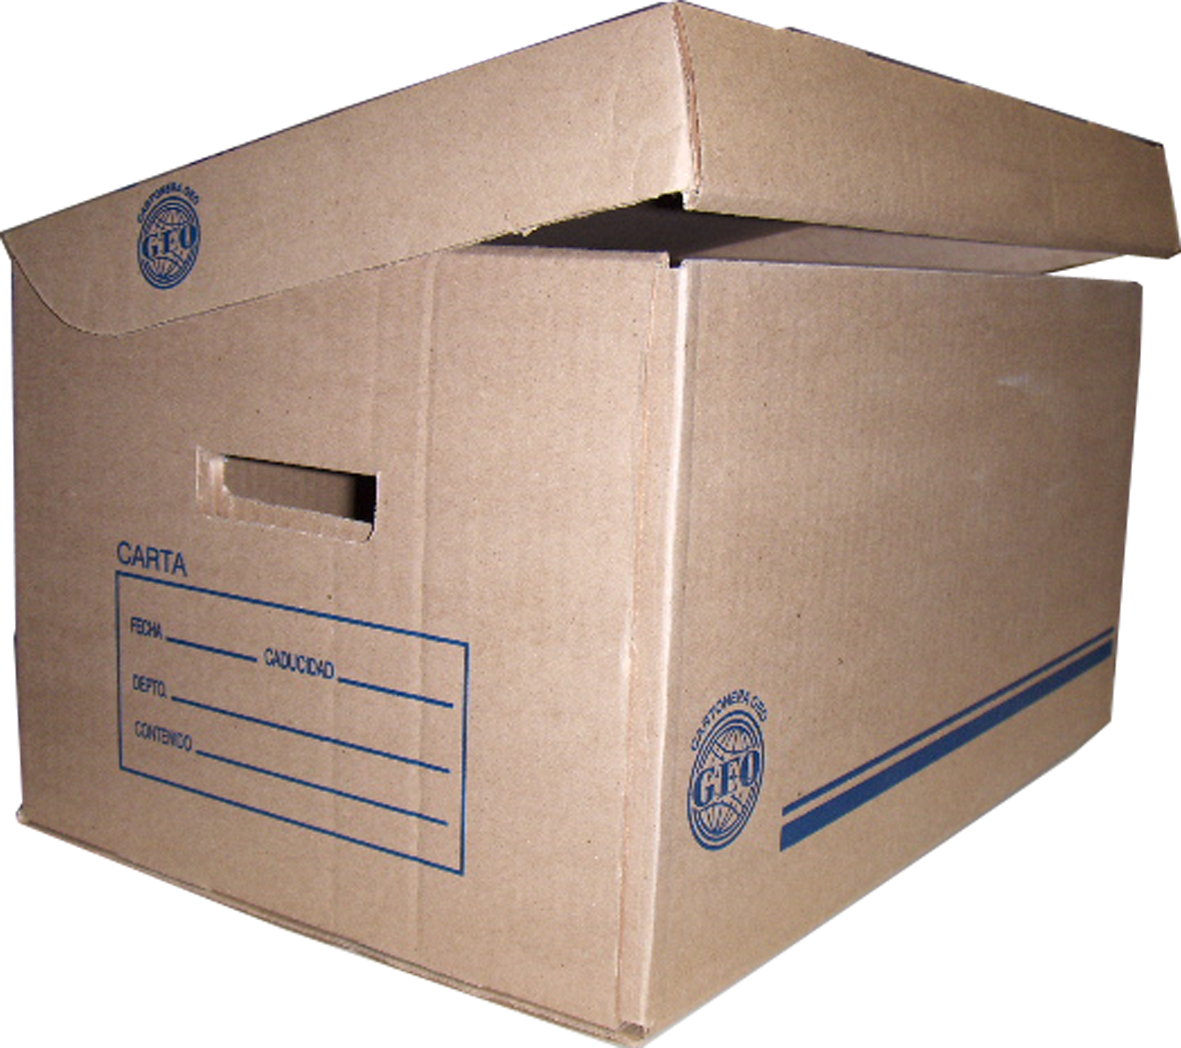 Caja de archivo GEO kraft para registrad Medida: 50 x 35 x 29 cm, cartón corrugado sencillo kraft, corte sobre suaje, 95% reciclado, calibre de 3 mm, resistencia de 11 kg/cm, flauta tipo "C".                                                                                                          or oficio                                - 1000006